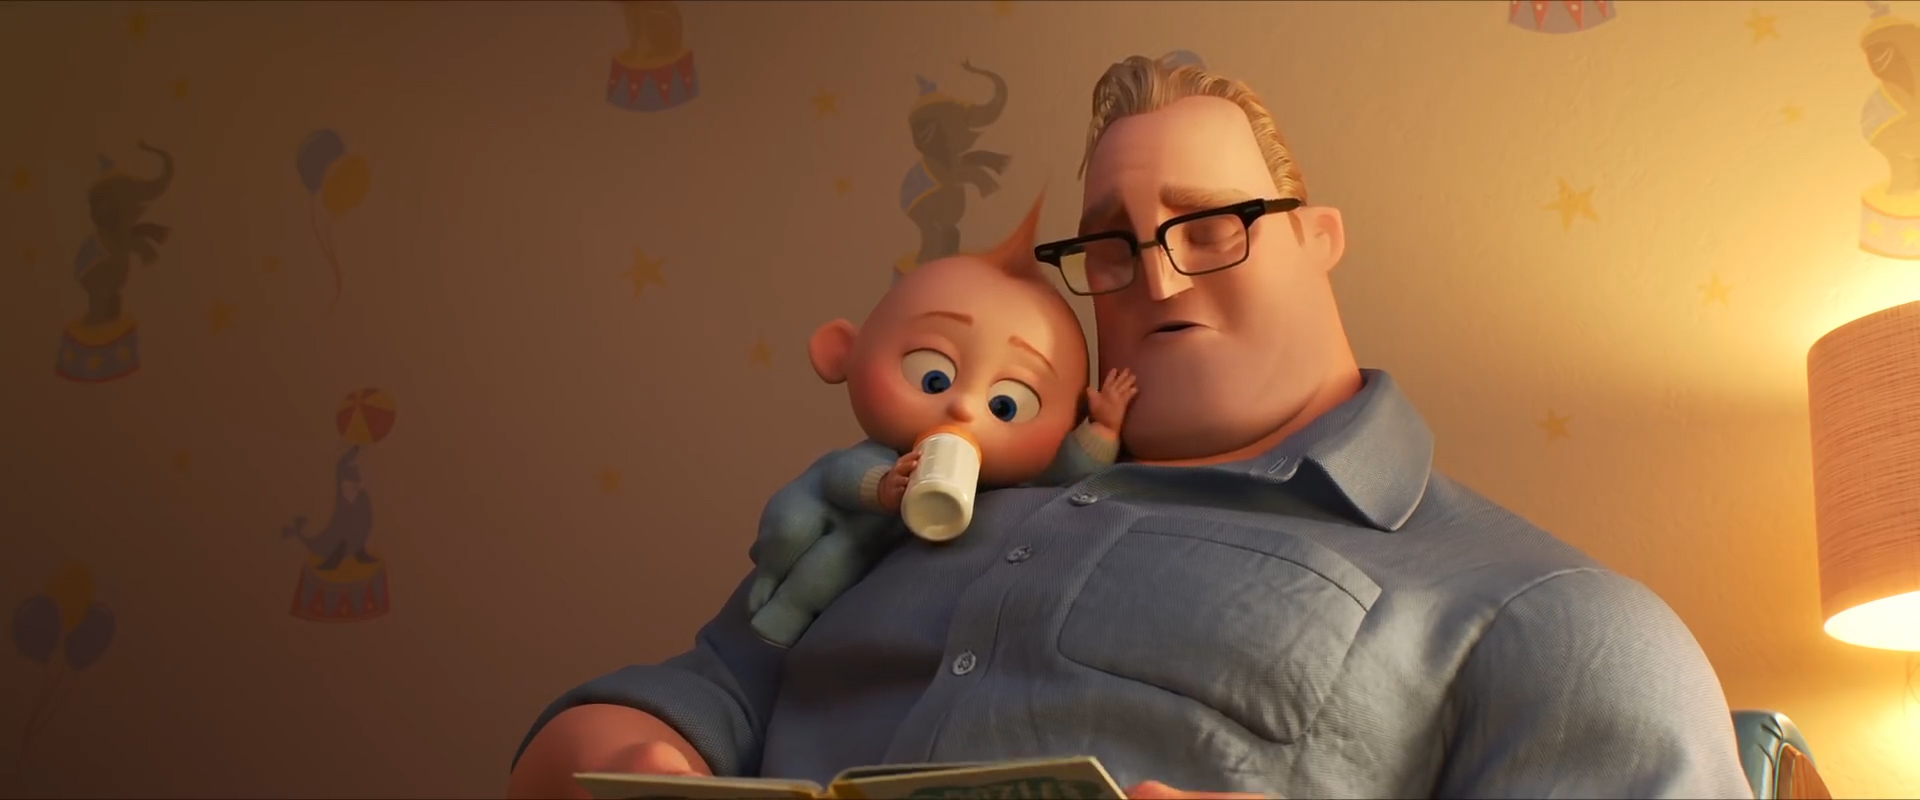 Incredibles 2 screencap (Disney/Pixar)